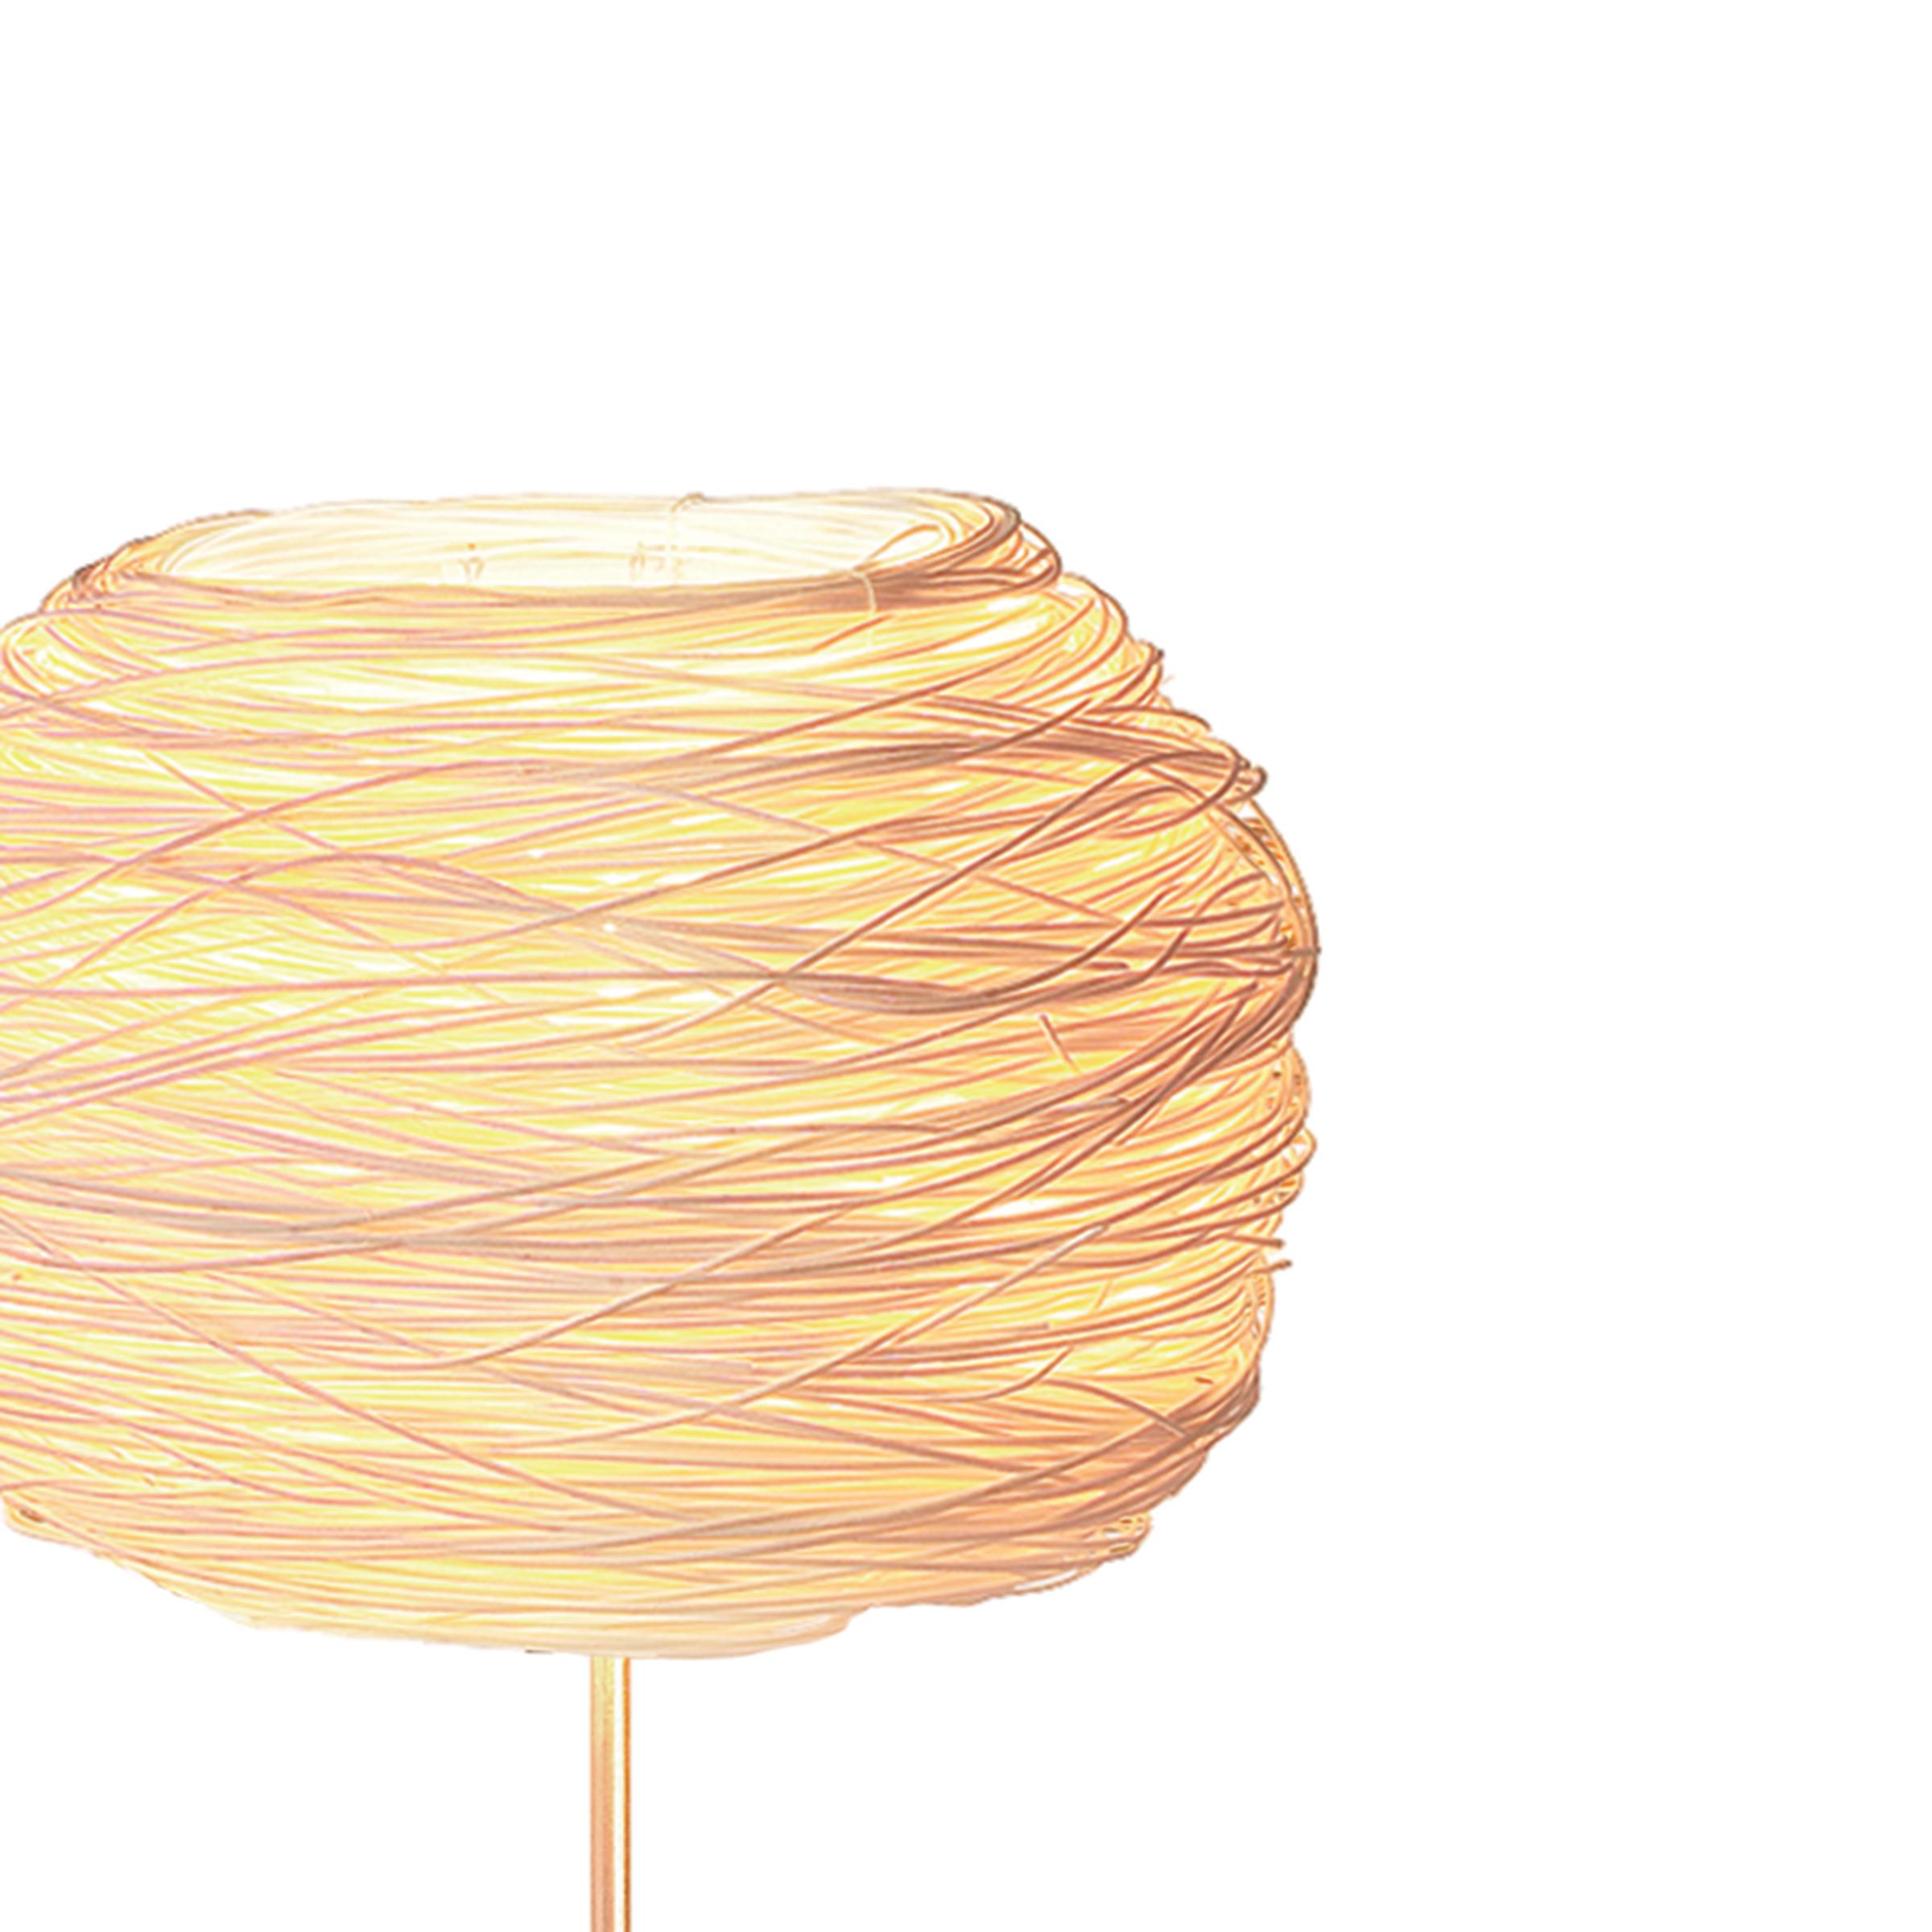 La lampe de table Wand Nest fait partie d'une collection unique de lampes de table fabriquées à la main, conçue et créée par Ango. L'ambiance chaleureuse et subtile générée par la lumière diffusée crée une énergie relaxante dans l'espace. La lampe